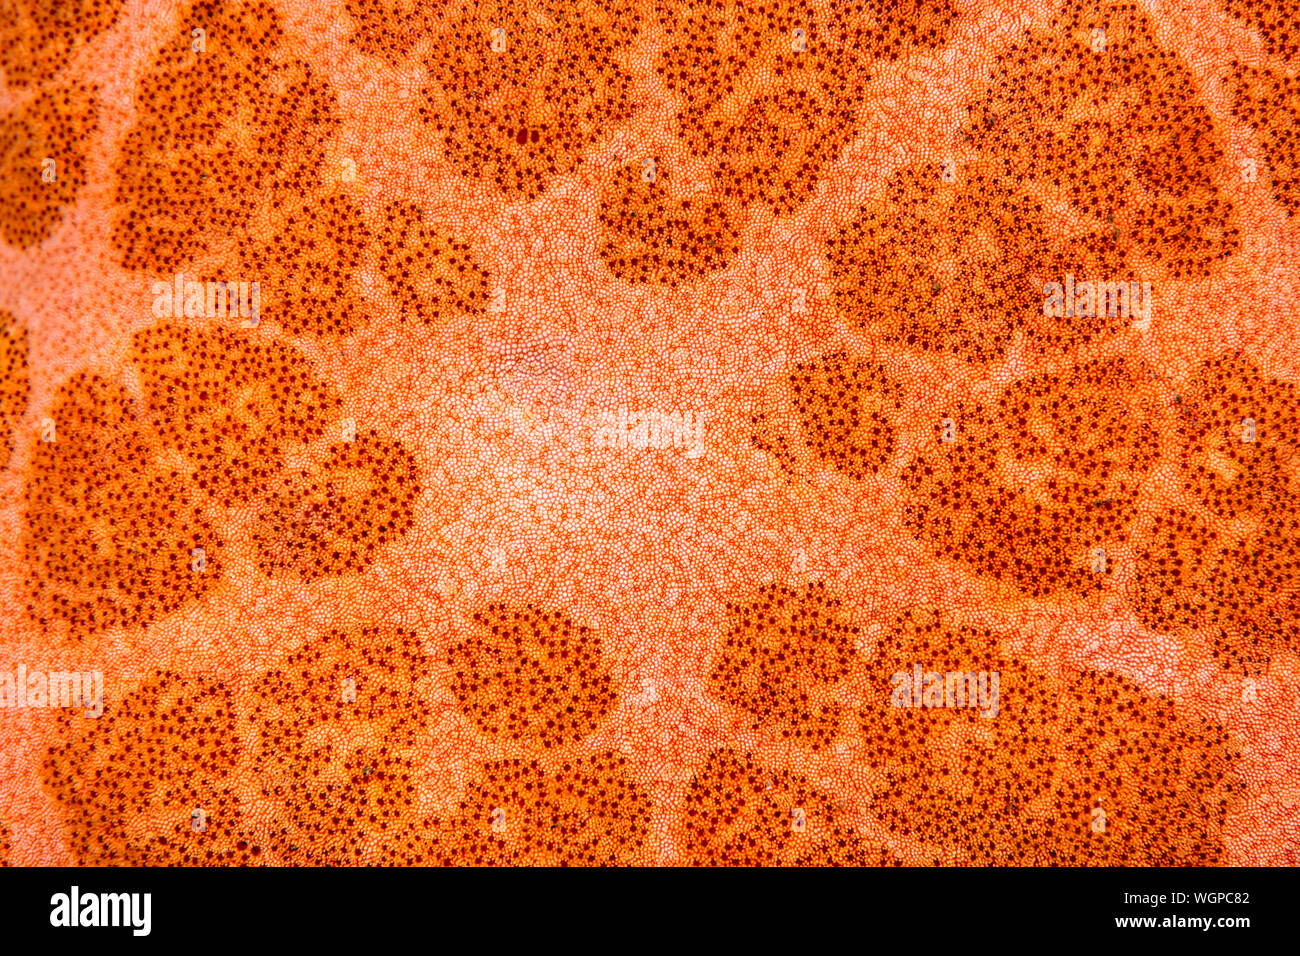 Super macro immagine di una stella di mare corpo mostra intricati dettagli e modelli di echinodermi. Foto Stock